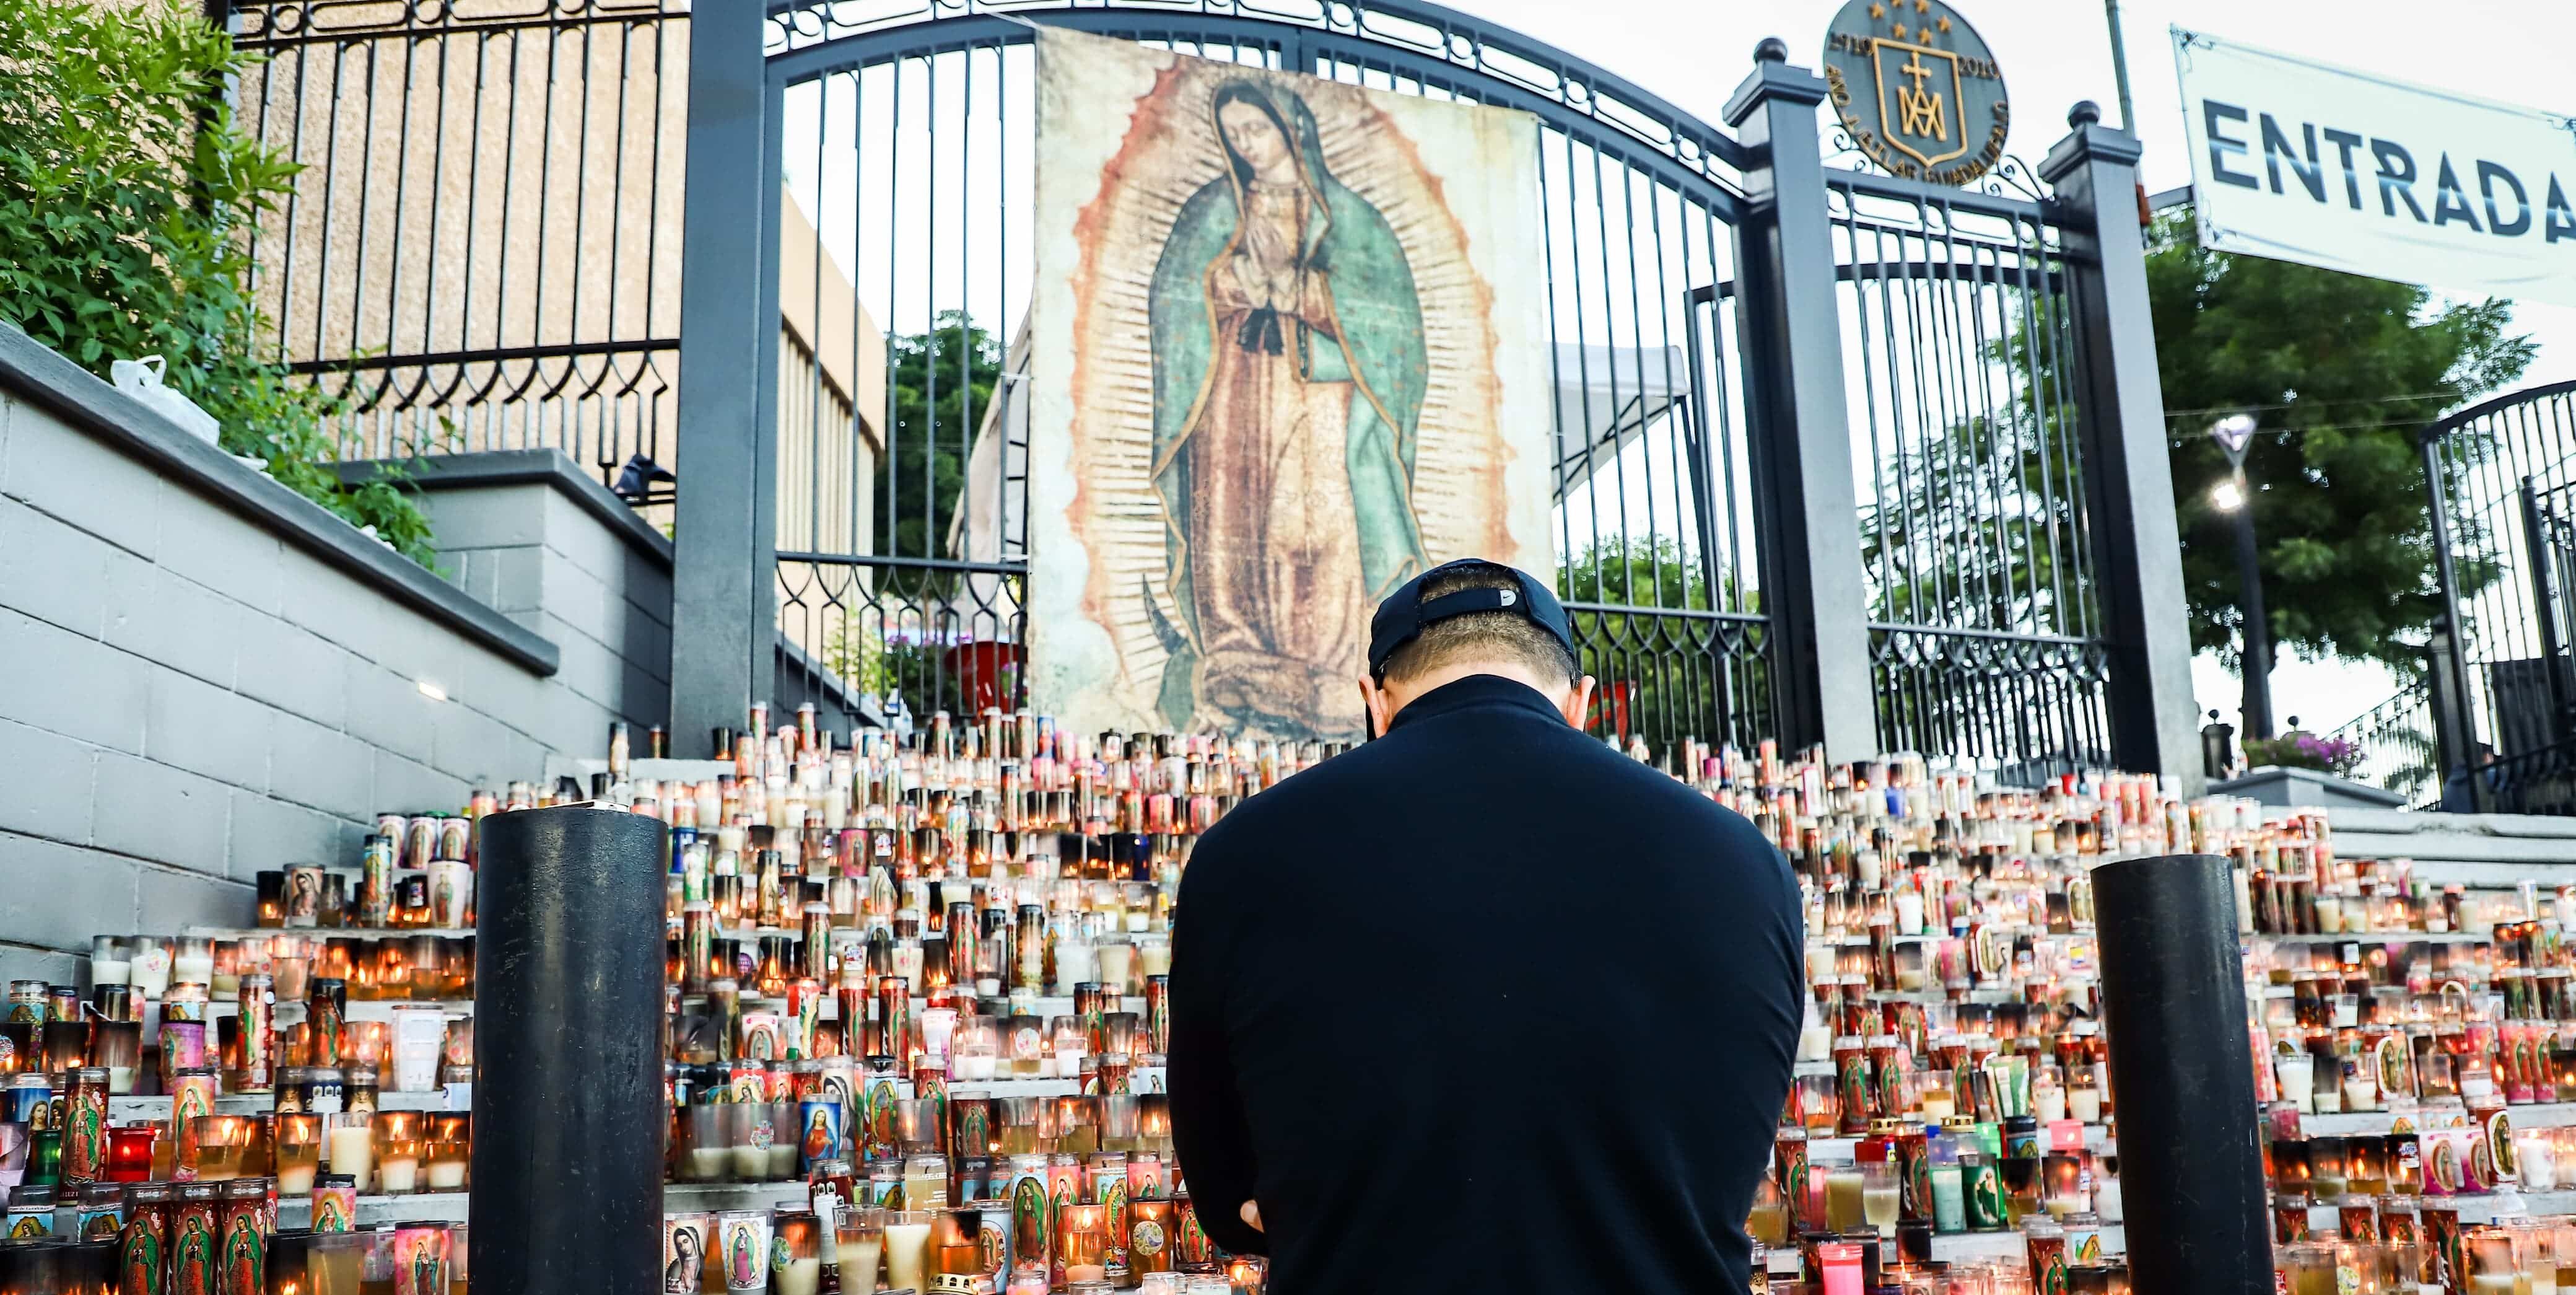 Una persona hincada, veladoras y una imagen de la Virgen de Guadalupe en Culiacán